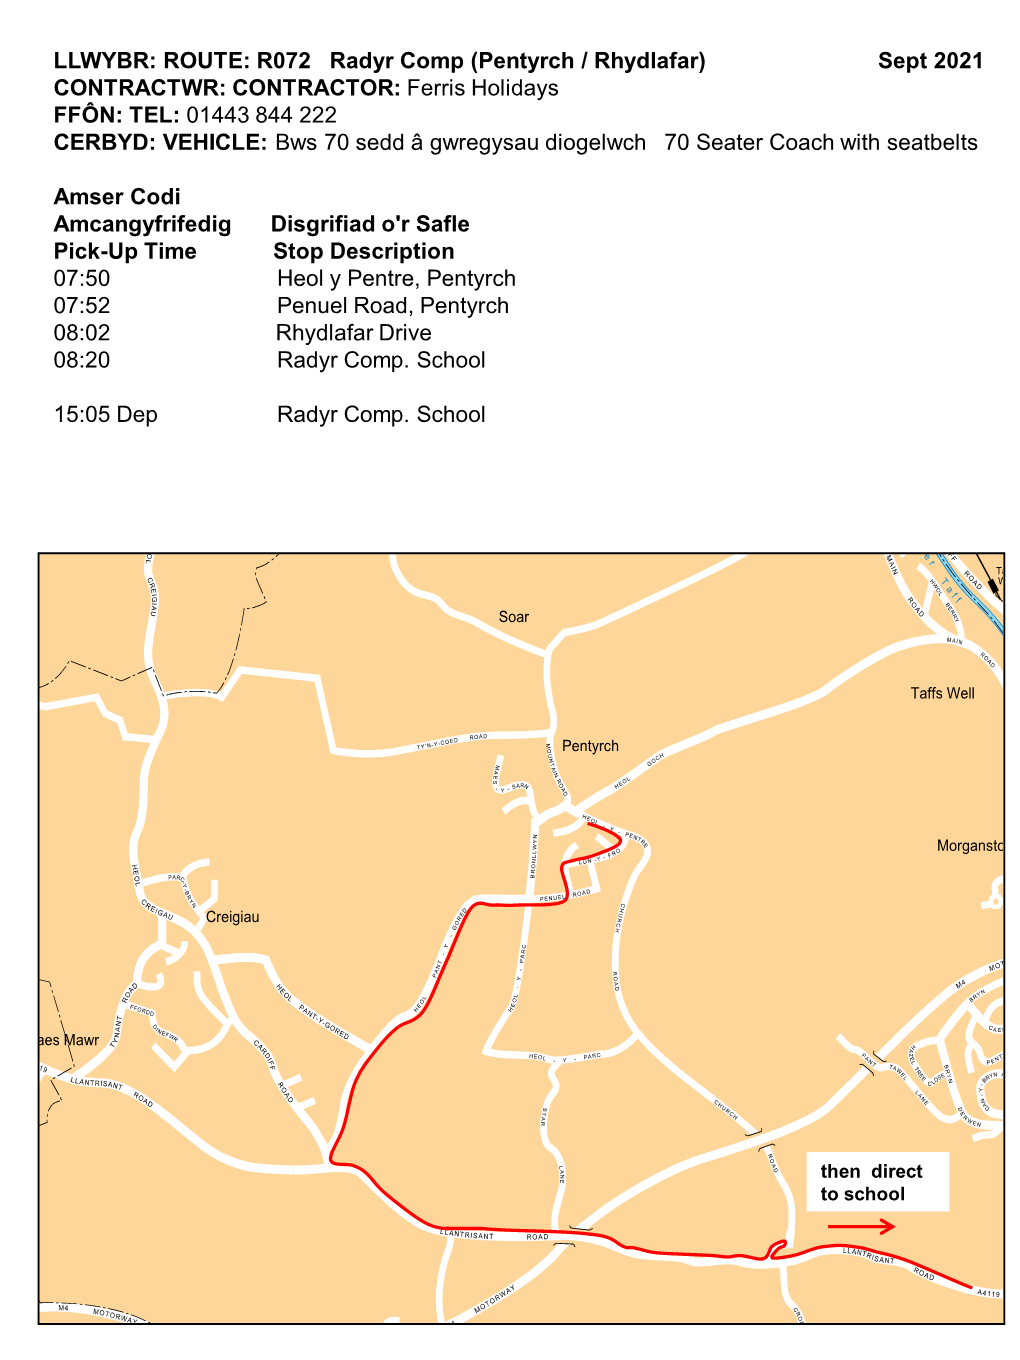 Route R072 Radyr Comp (Pentyrch, Rhydlafar)